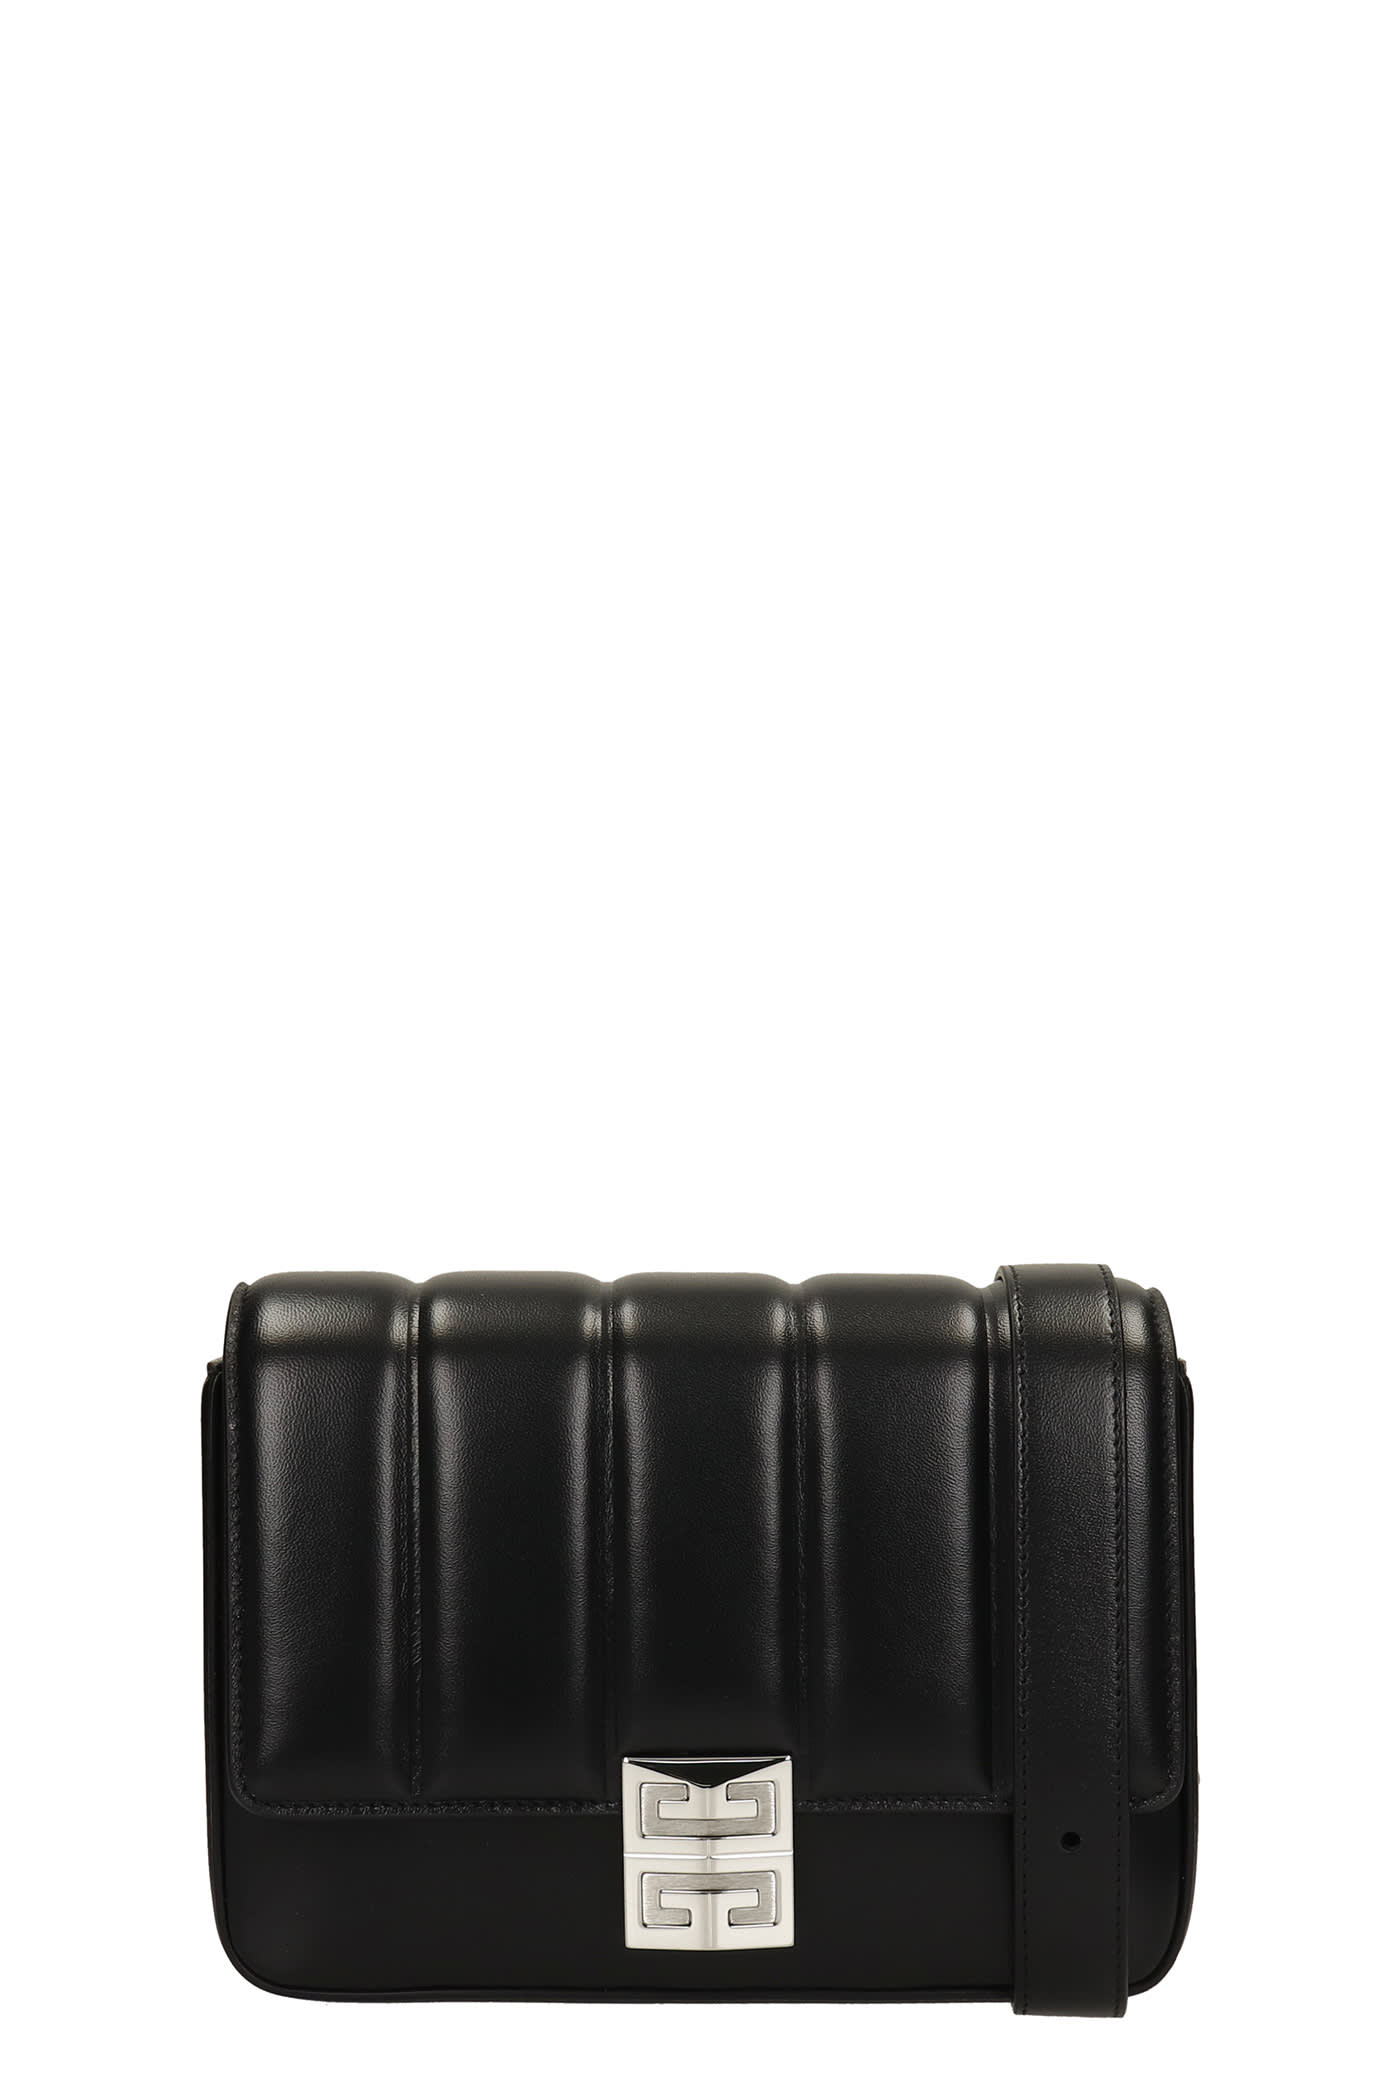 Givenchy 4g Shoulder Bag In Black Leather